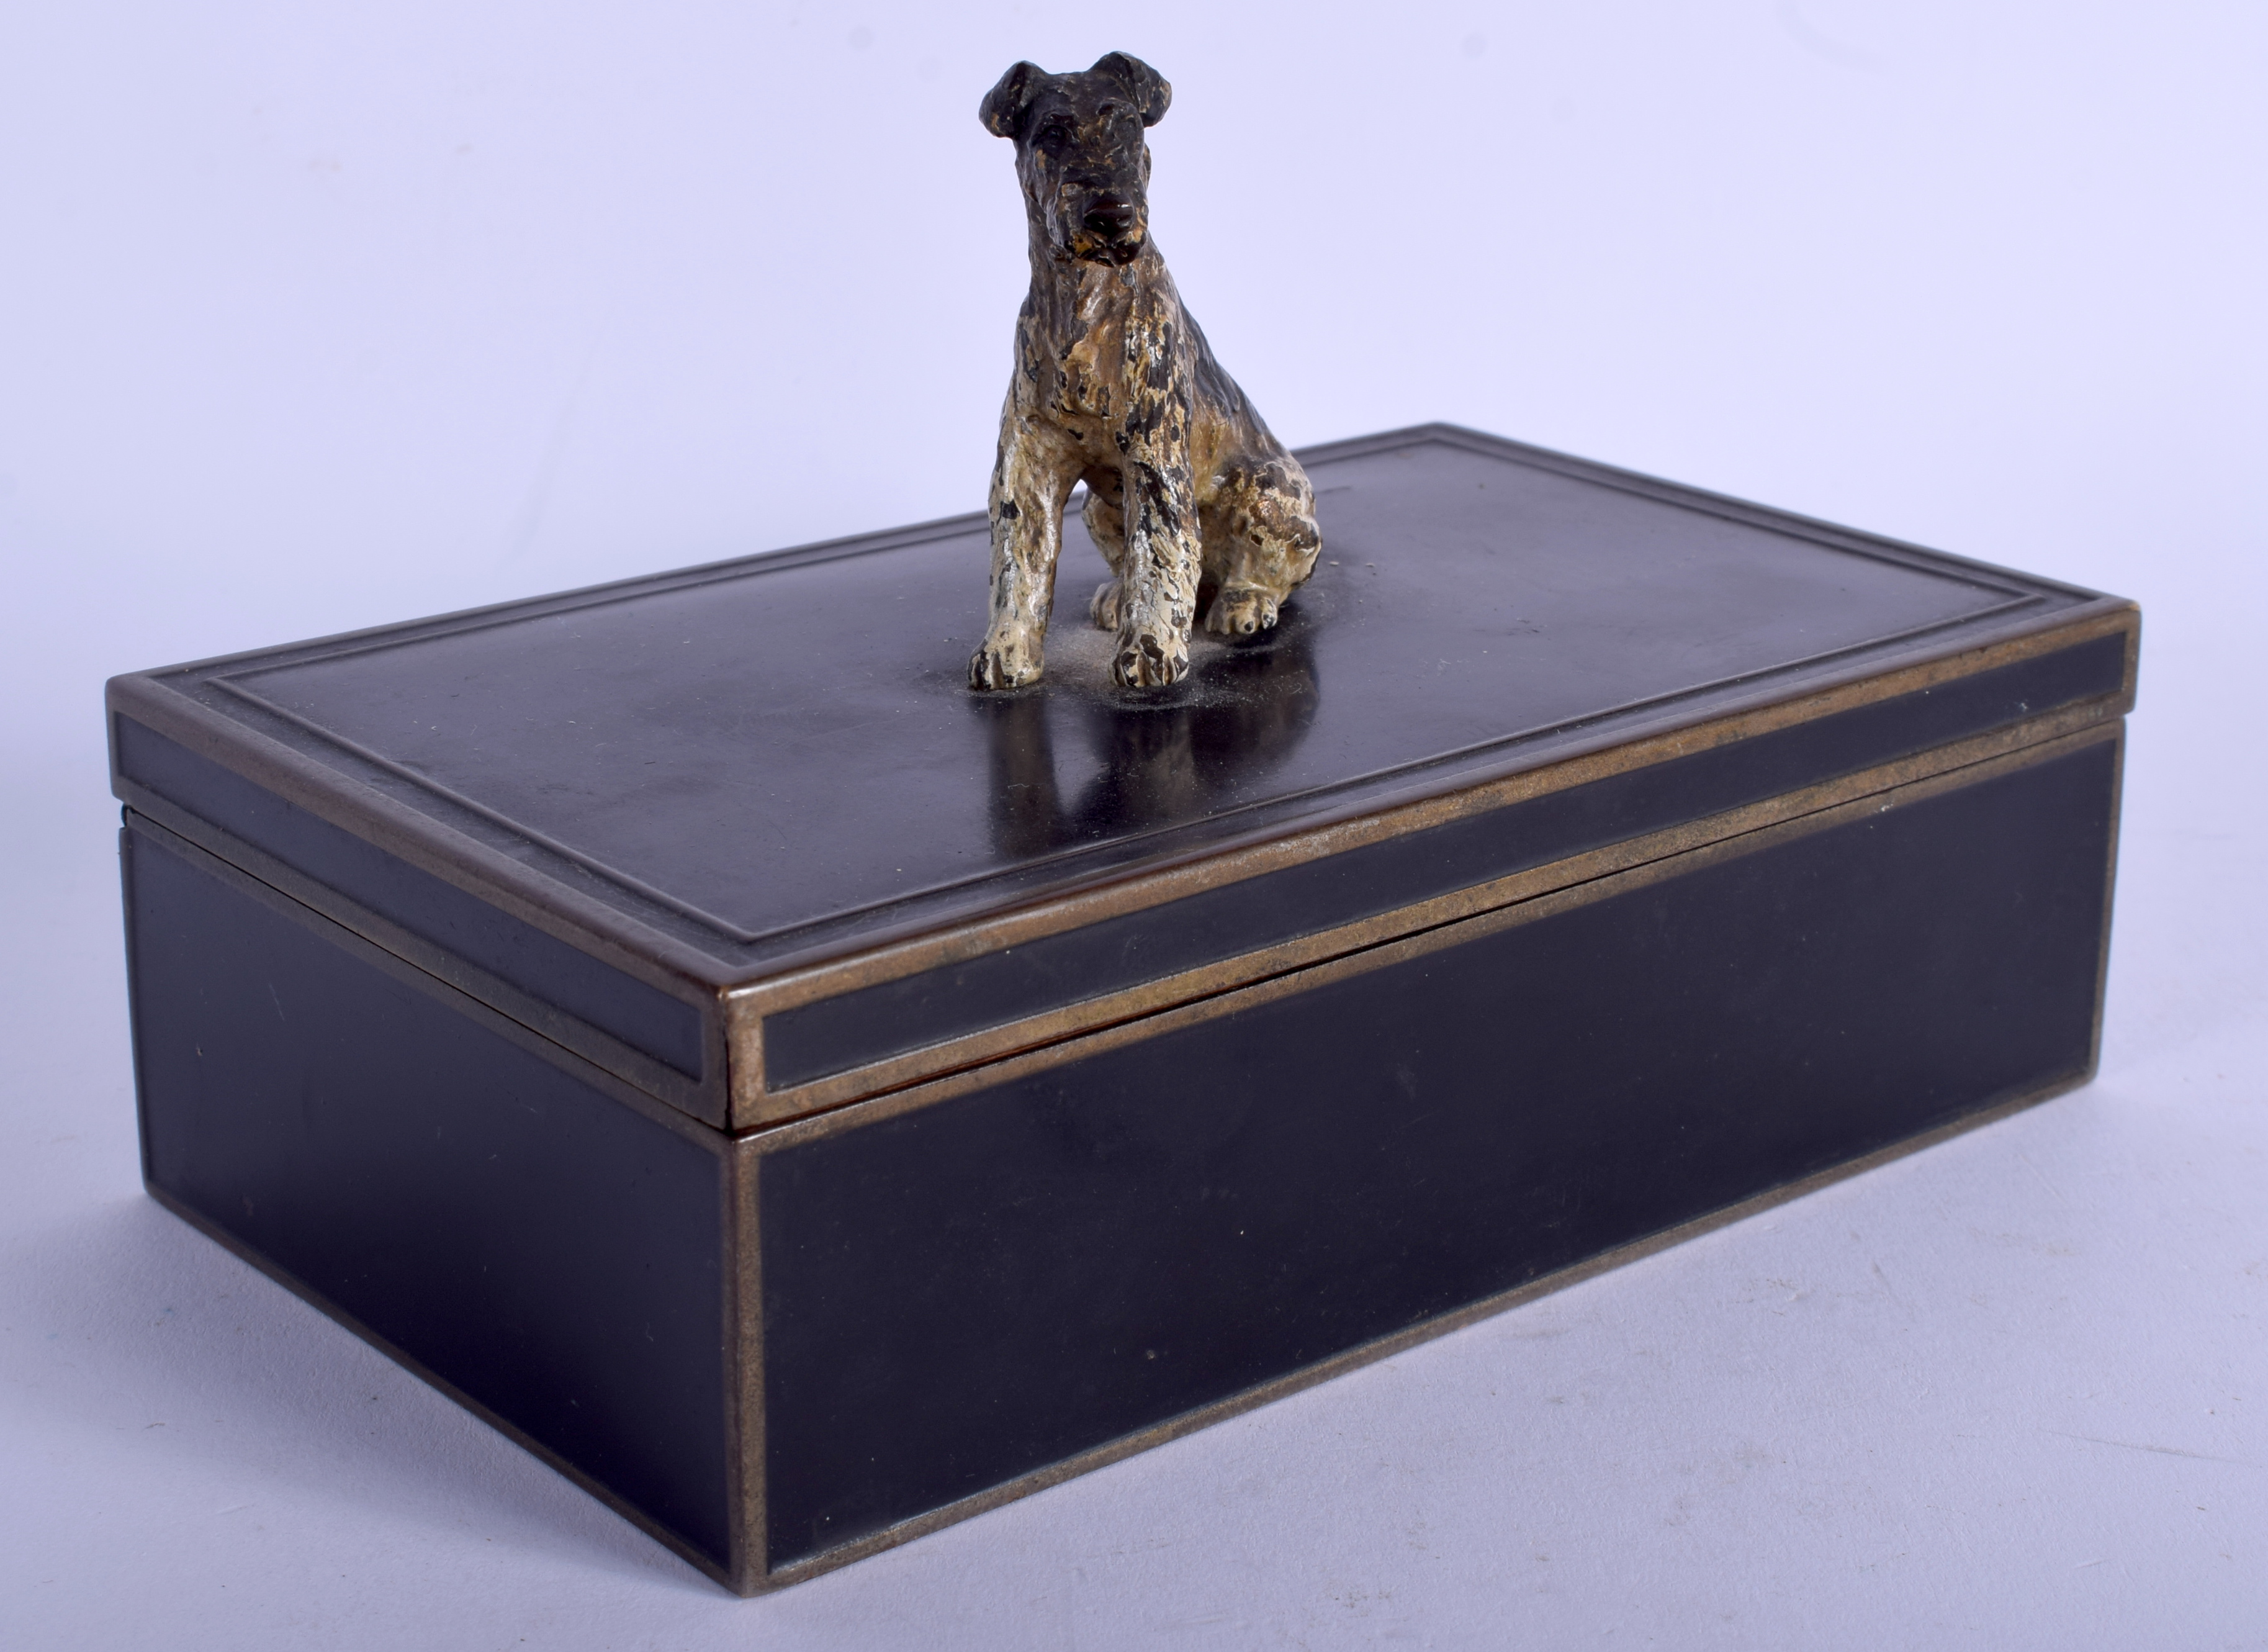 AN ART DECO COLD PAINTED DOGGY CIGARETTE BOX. 15 cm x 11 cm.